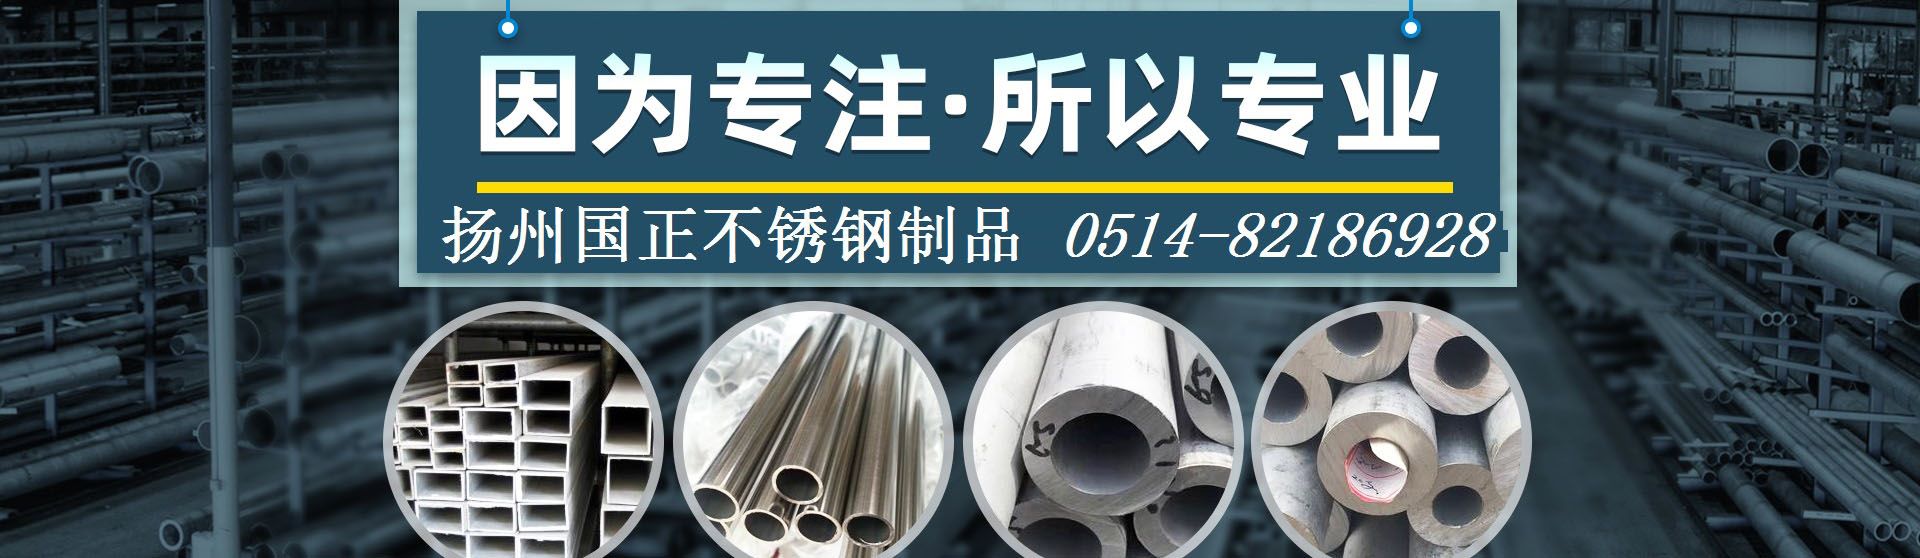 扬州国正不锈钢制品有限公司